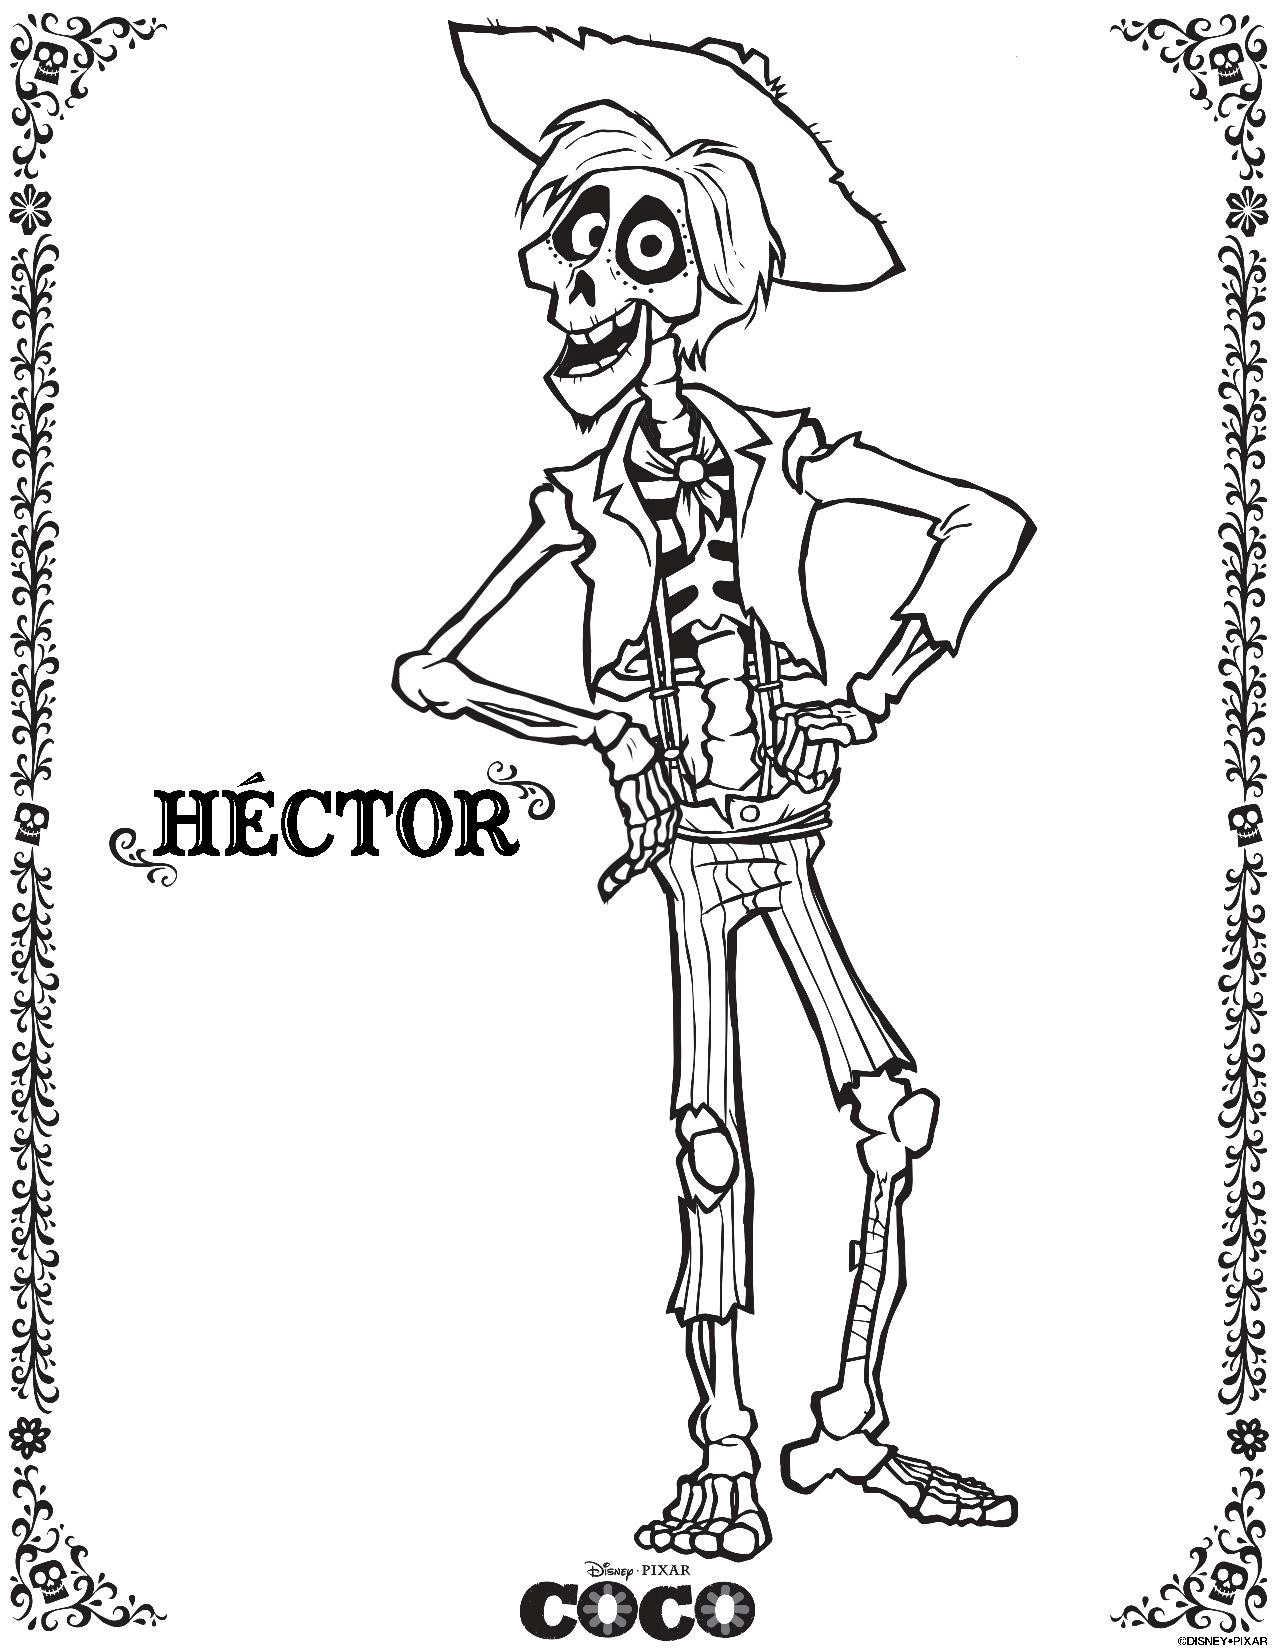 coco skelton hector-coloring page